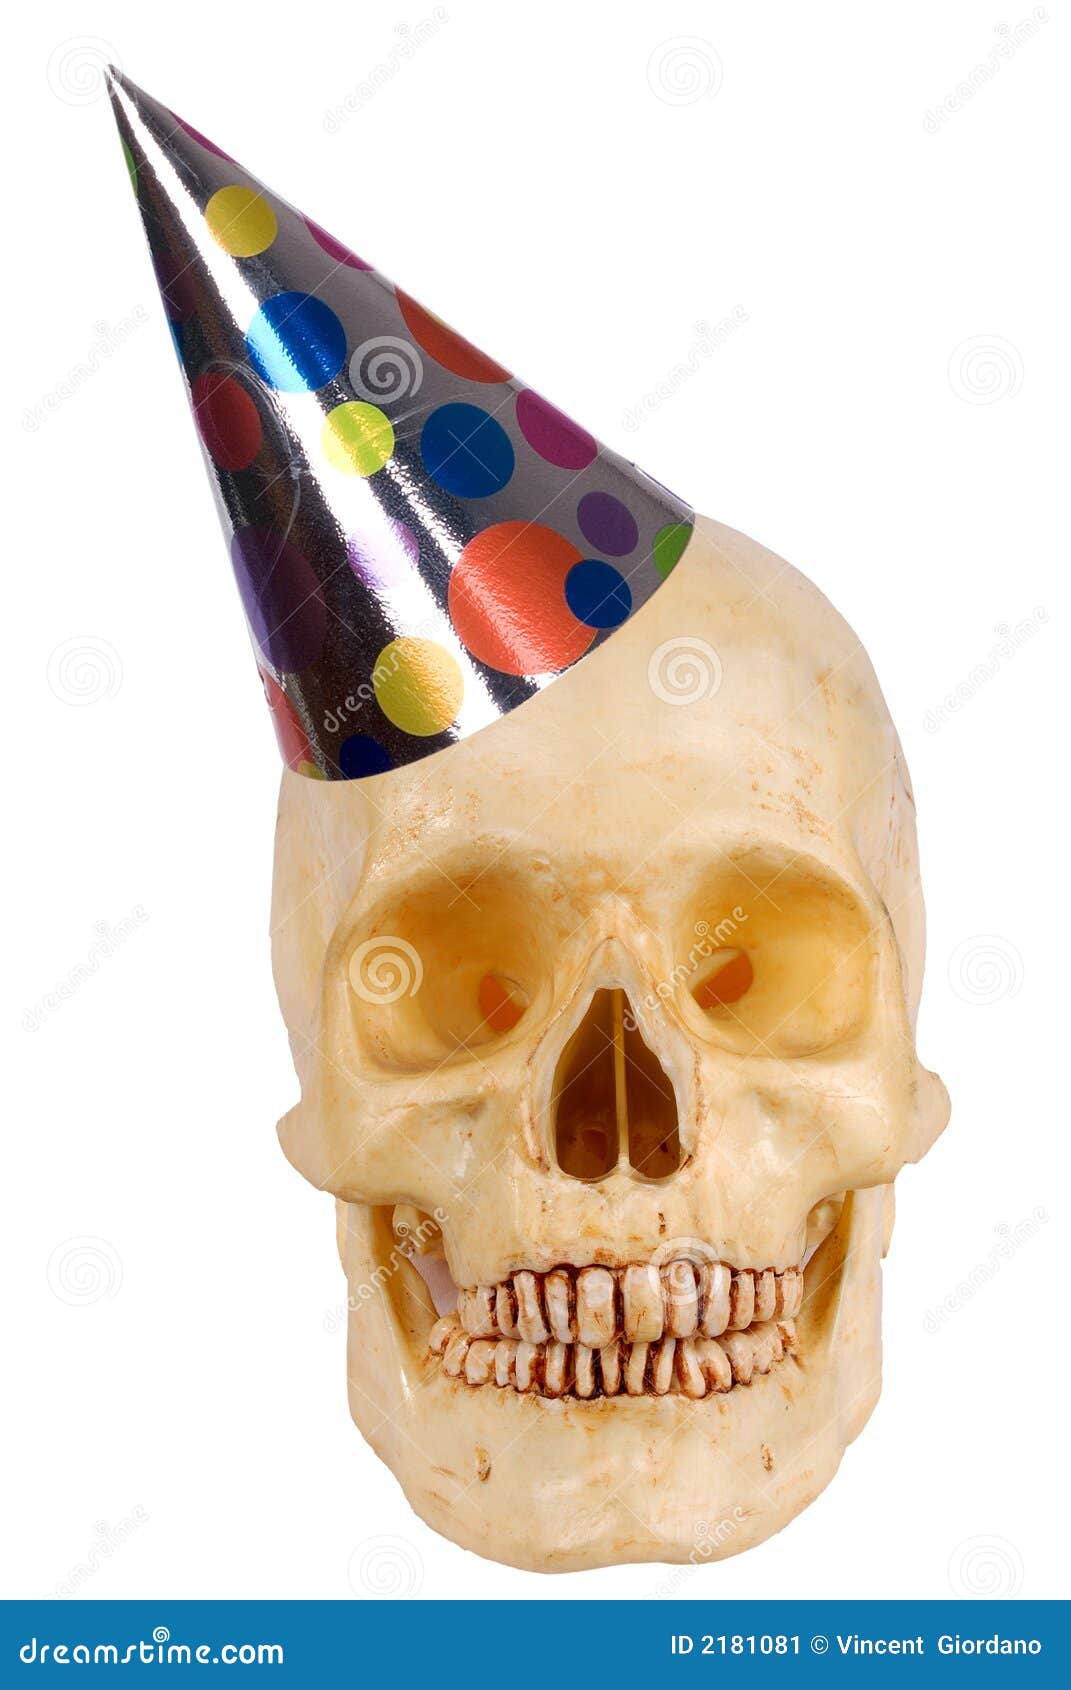 human-skull-party-hat-2181081.jpg